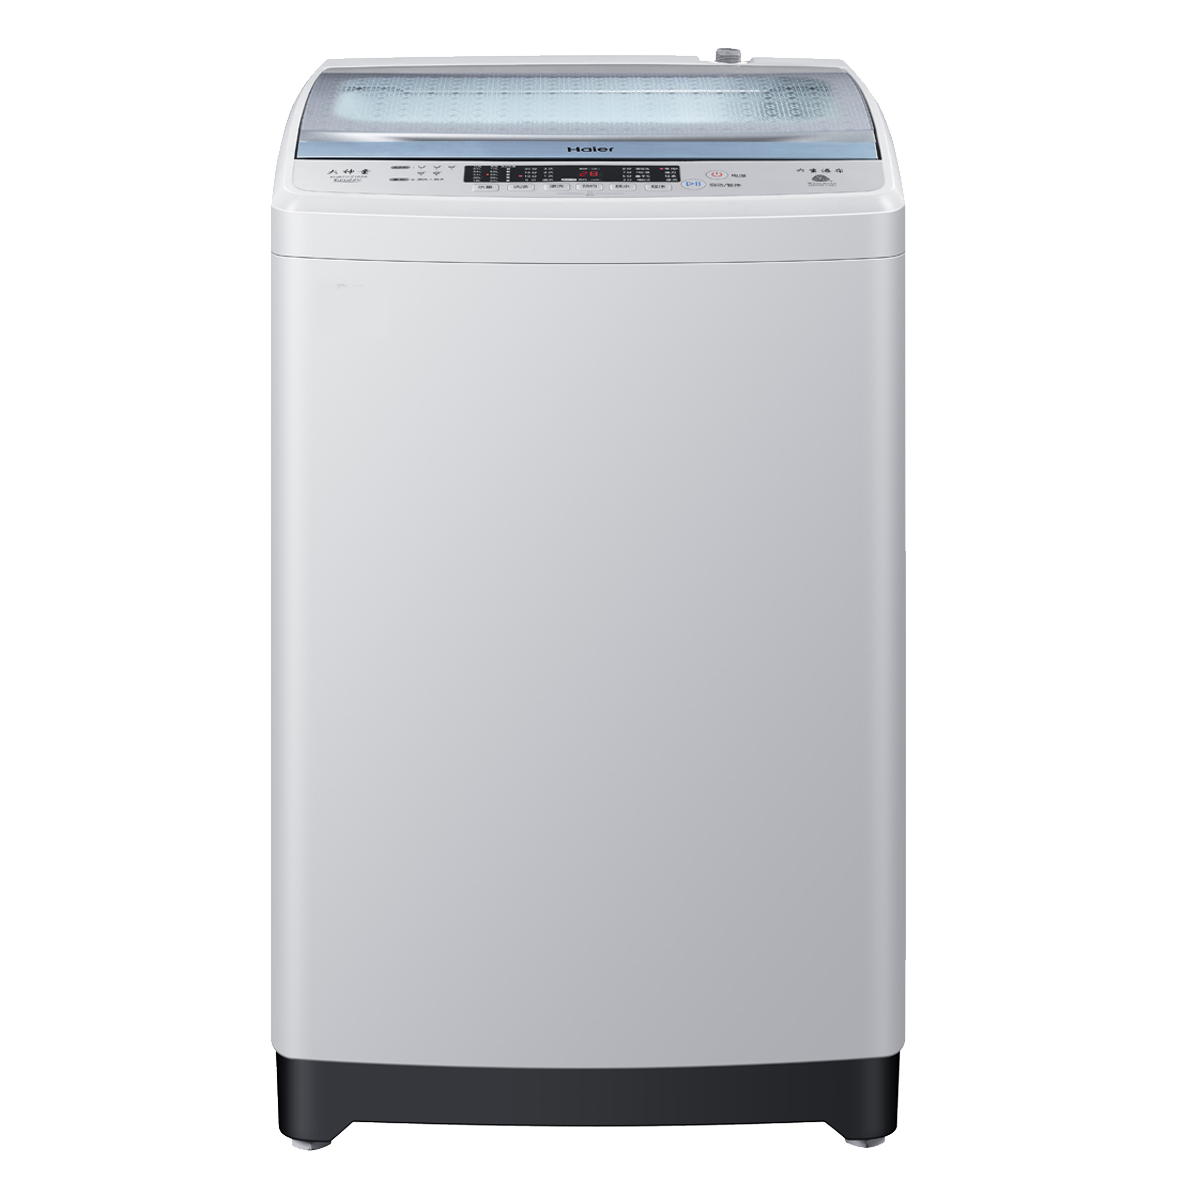 海尔Haier洗衣机 XQB70-Z1626 说明书